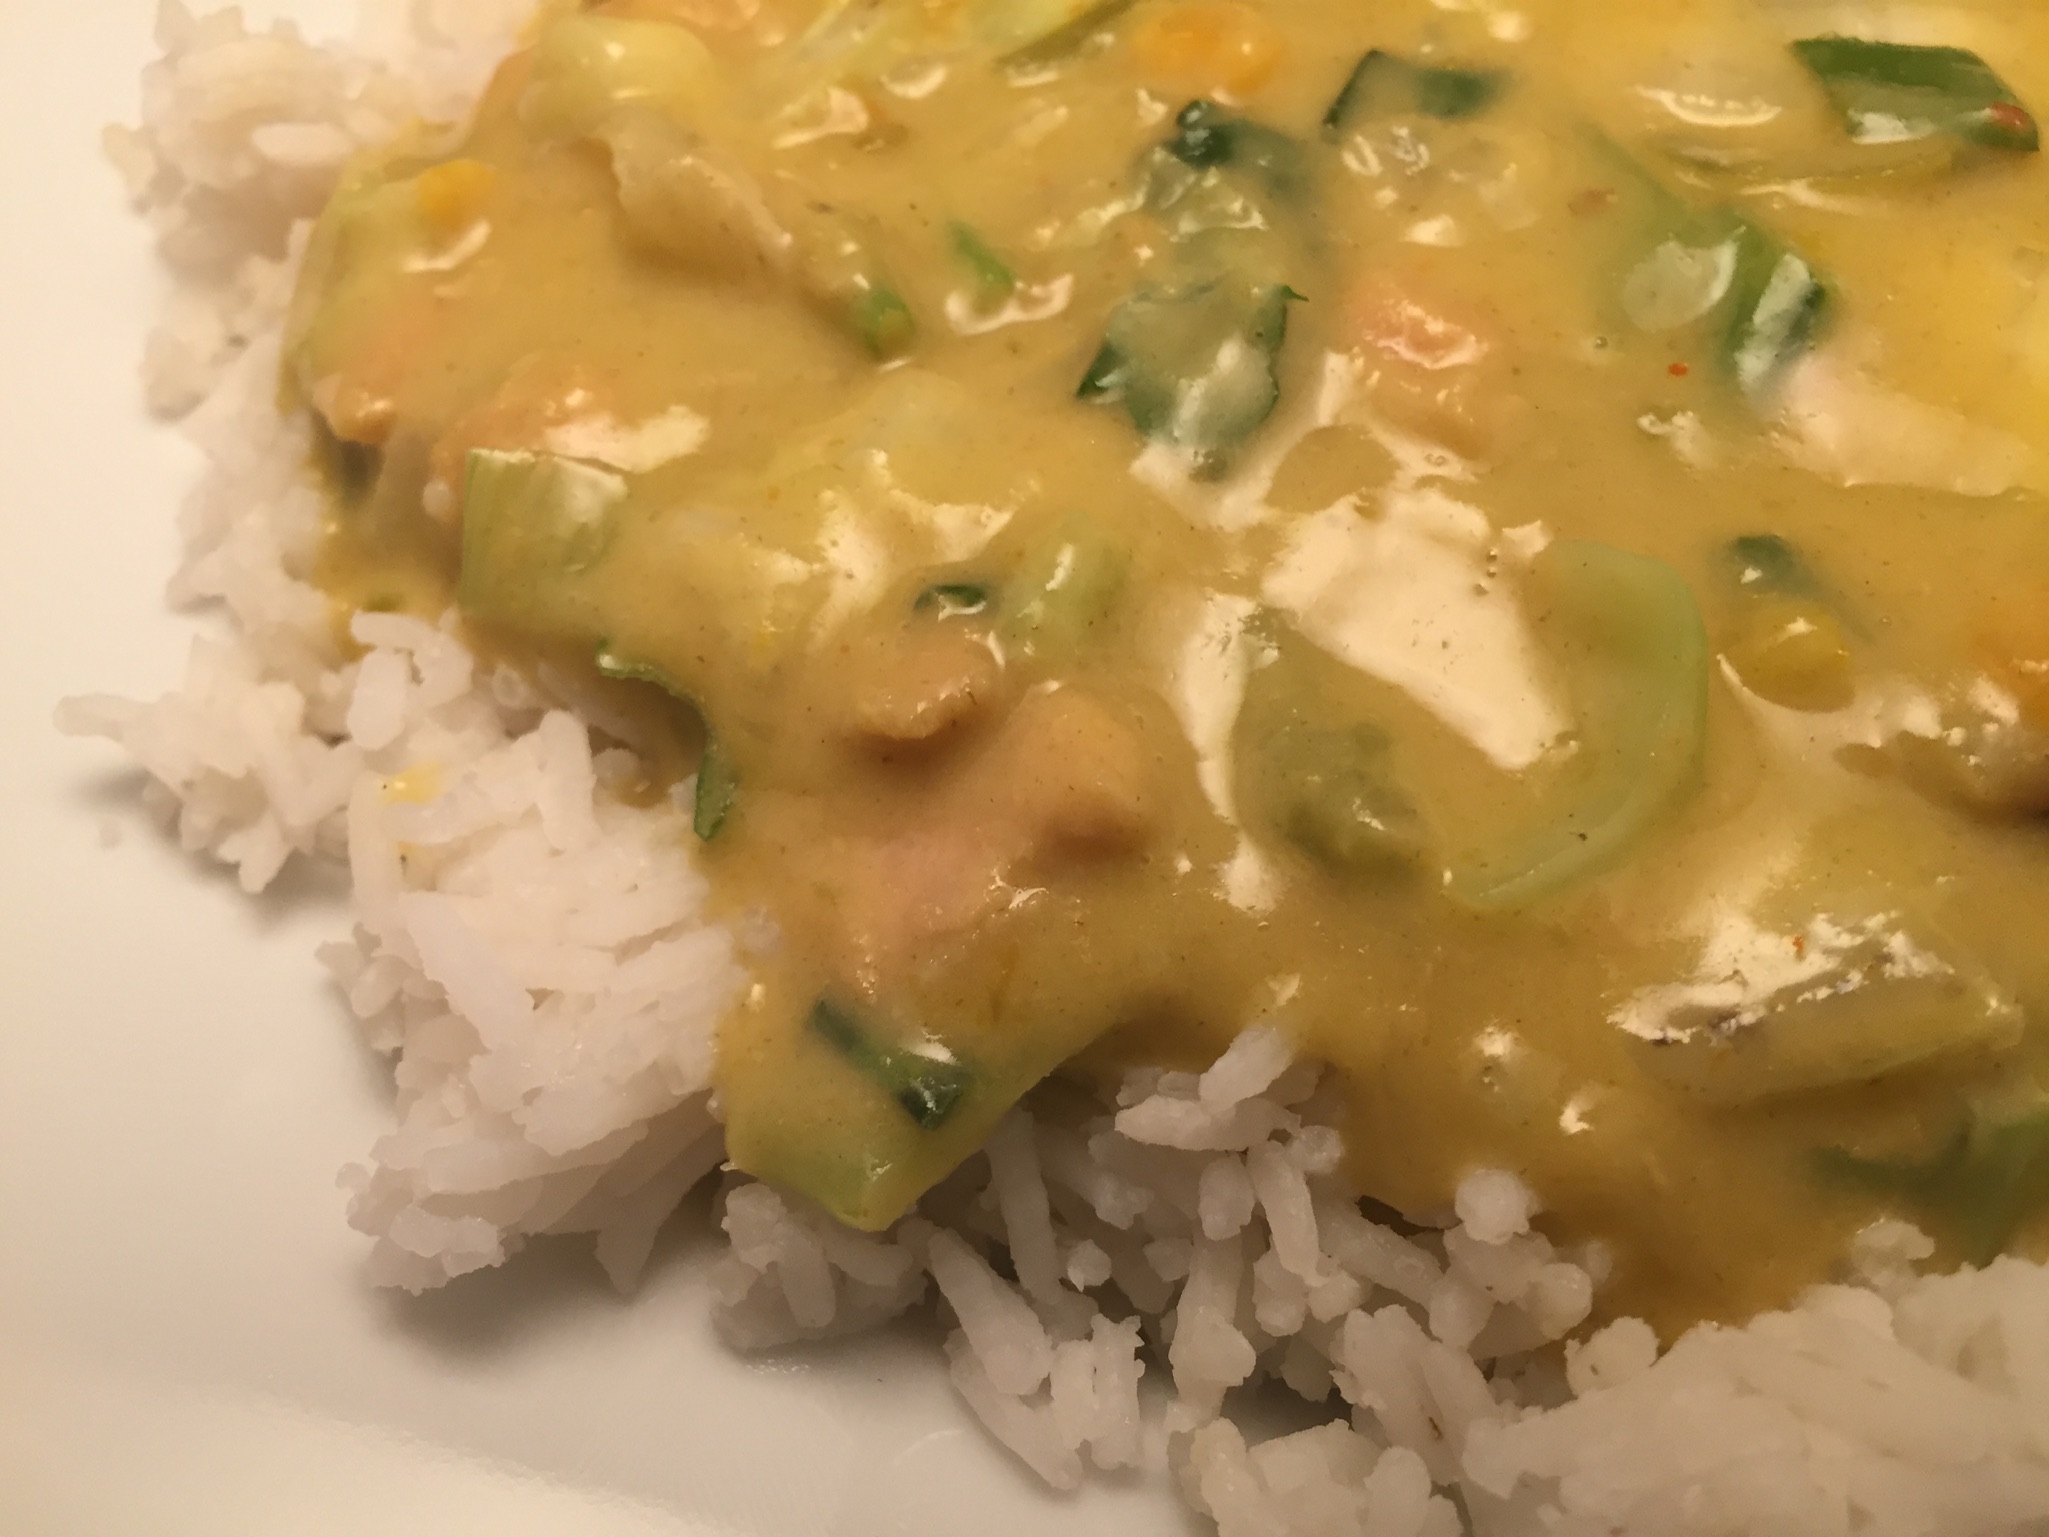 Pute, Gemüse und gelbe Thai-Currysauce